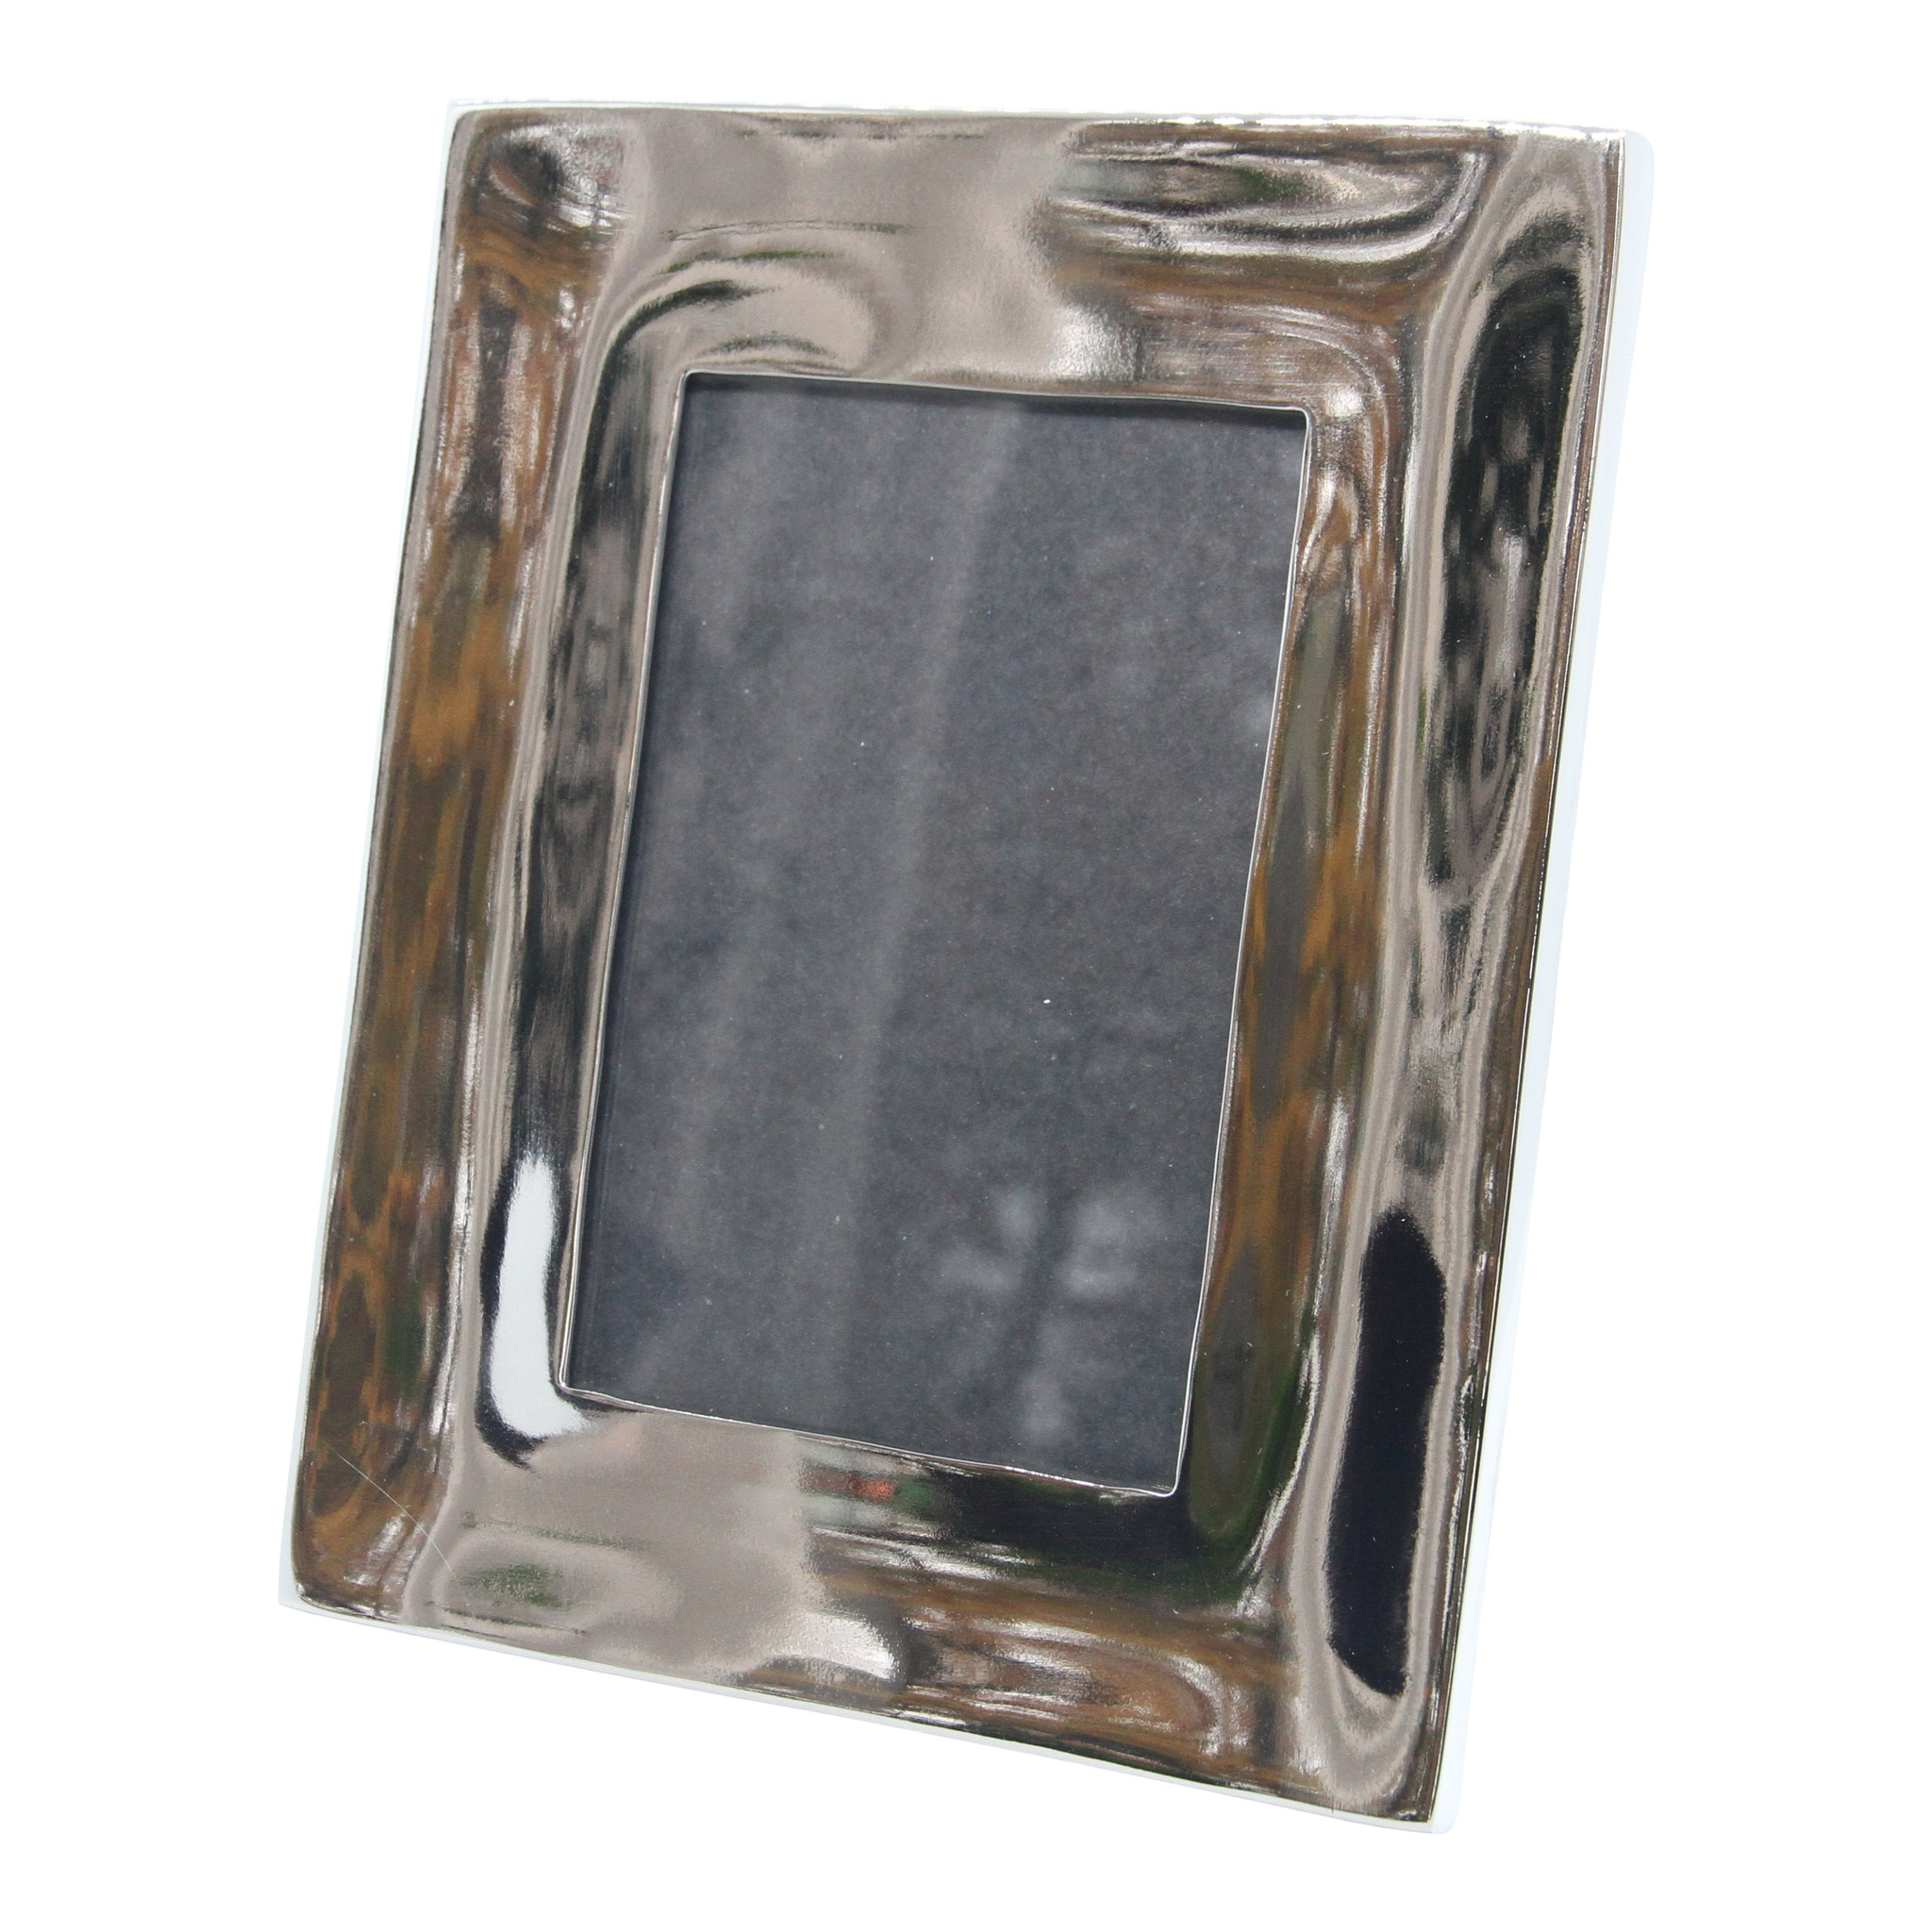 Cadre rectangulaire en aluminium nickelé poli 20 x 16,5 cm